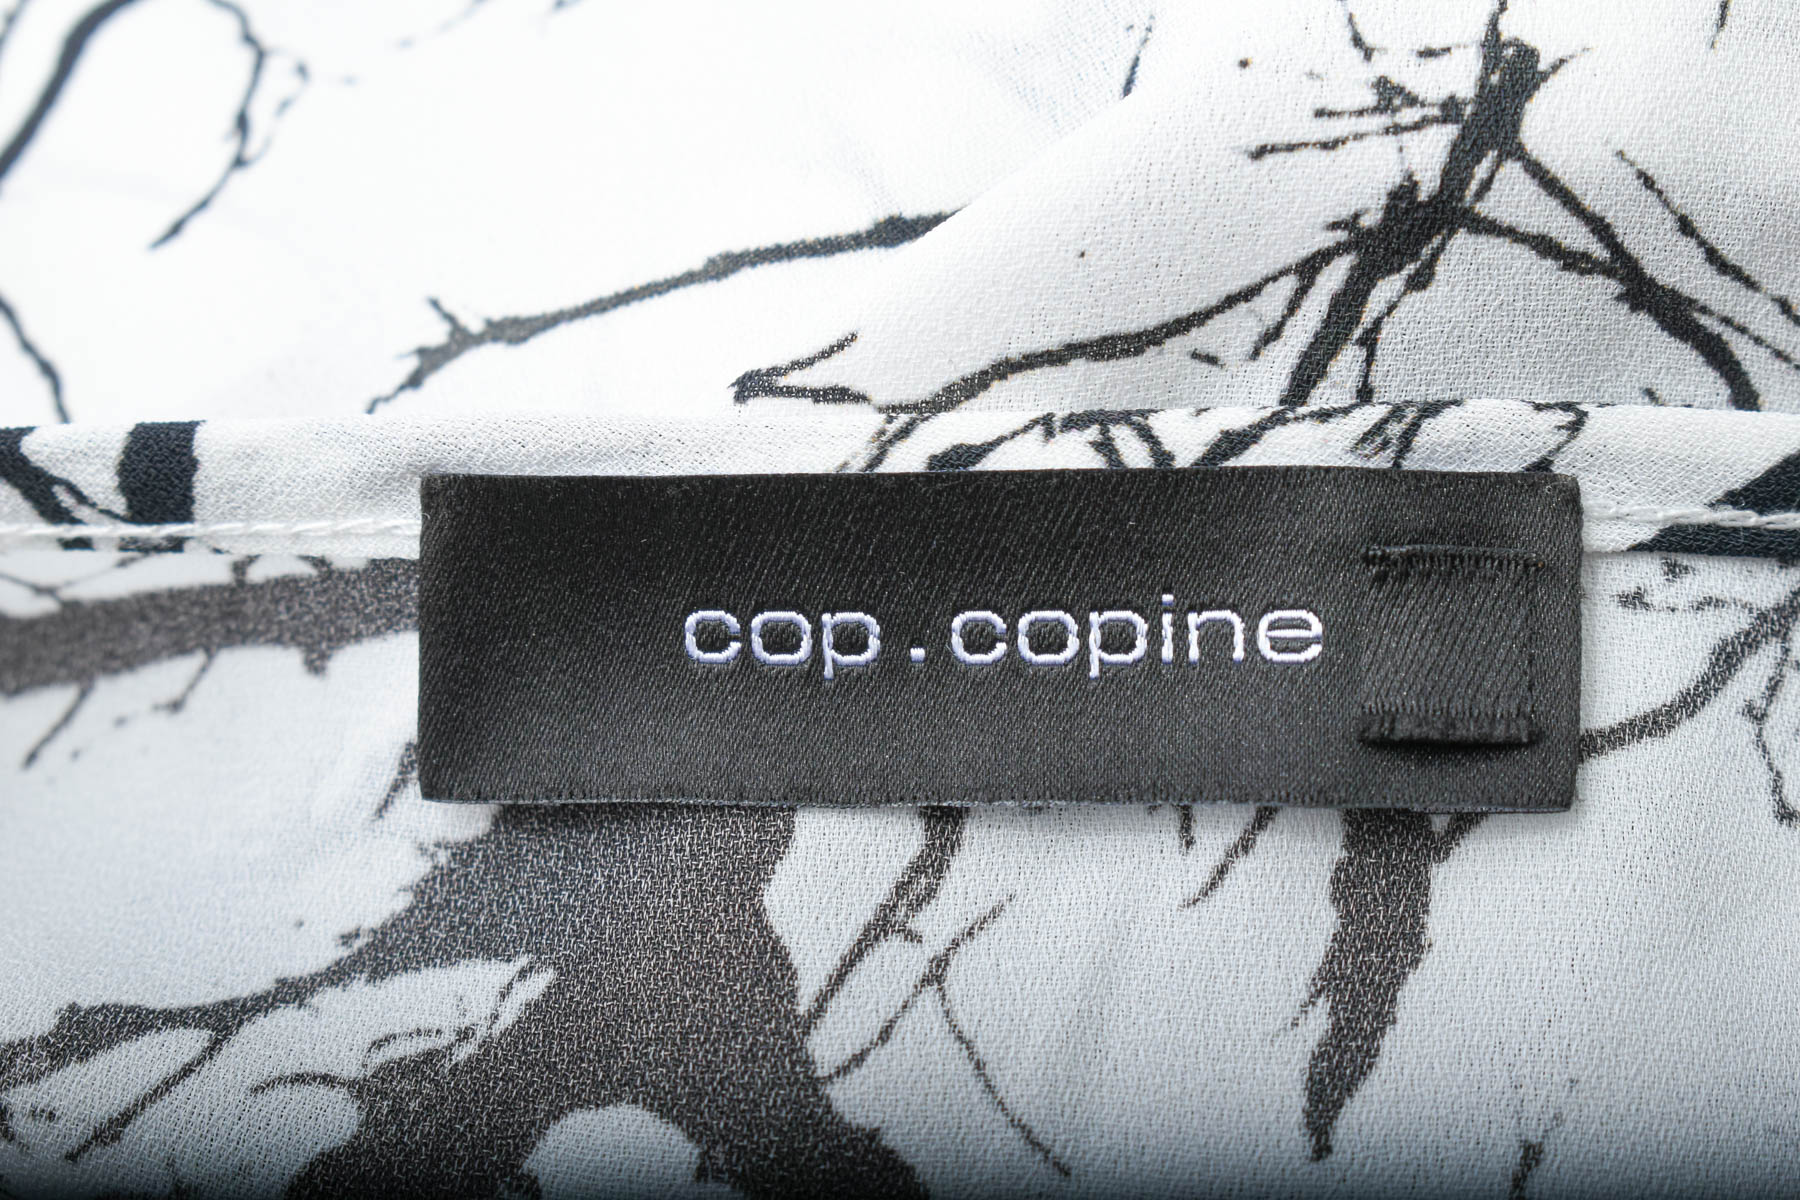 Sukienka - Cop. Copine - 2